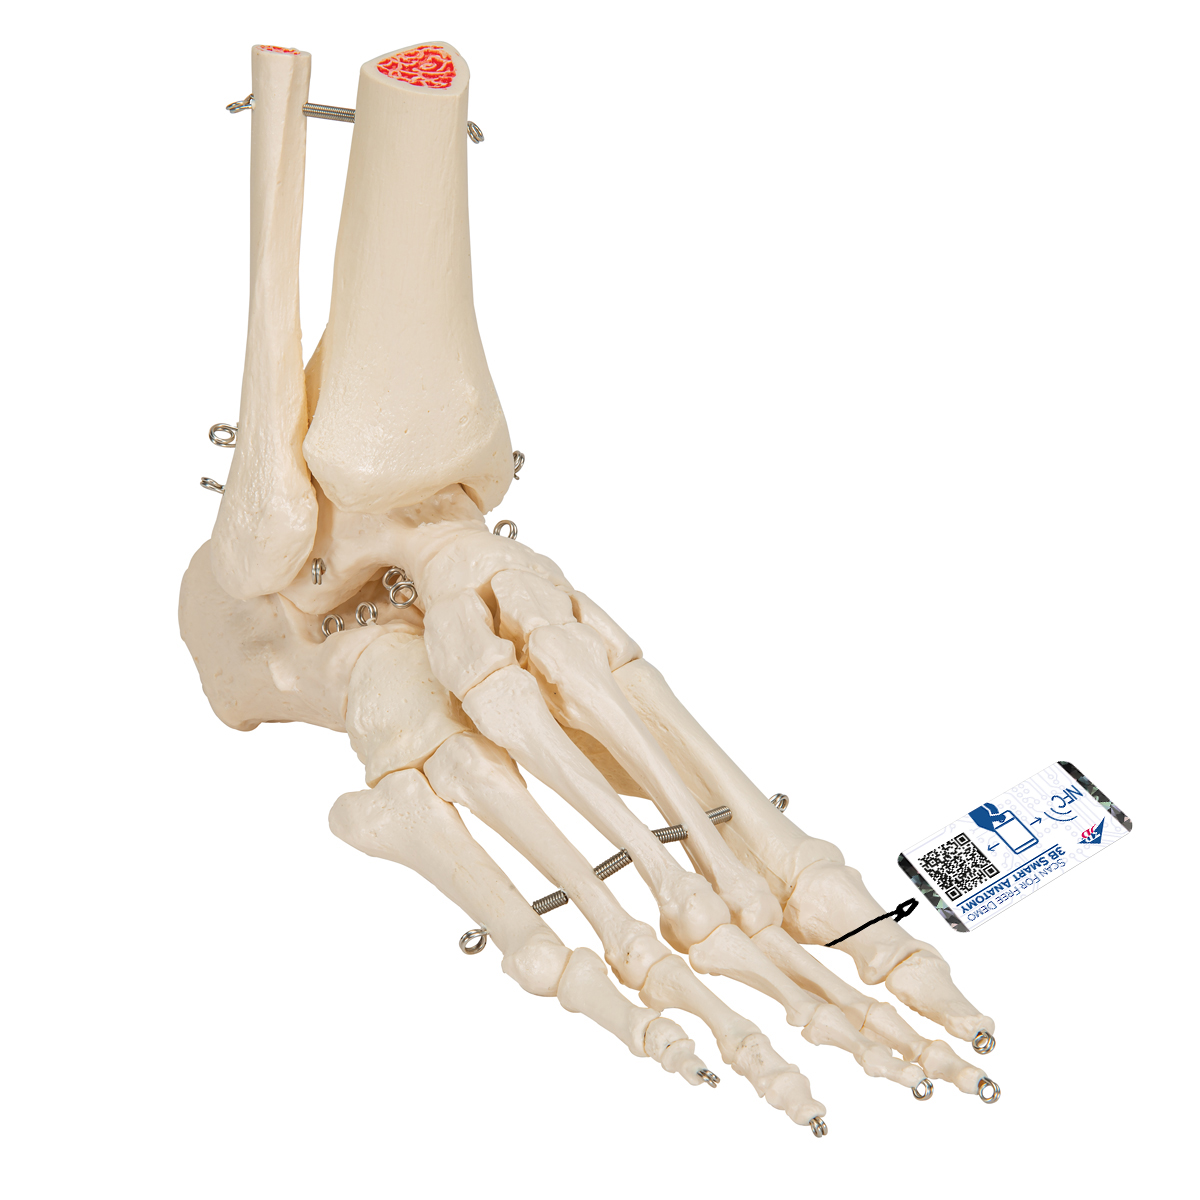 Fußskelett Modell mit Schienbein- und Wadenbeinstumpf, auf Draht gezogen - 3B Smart Anatomy, Bestellnummer 1019357, A31, 3B Scientific